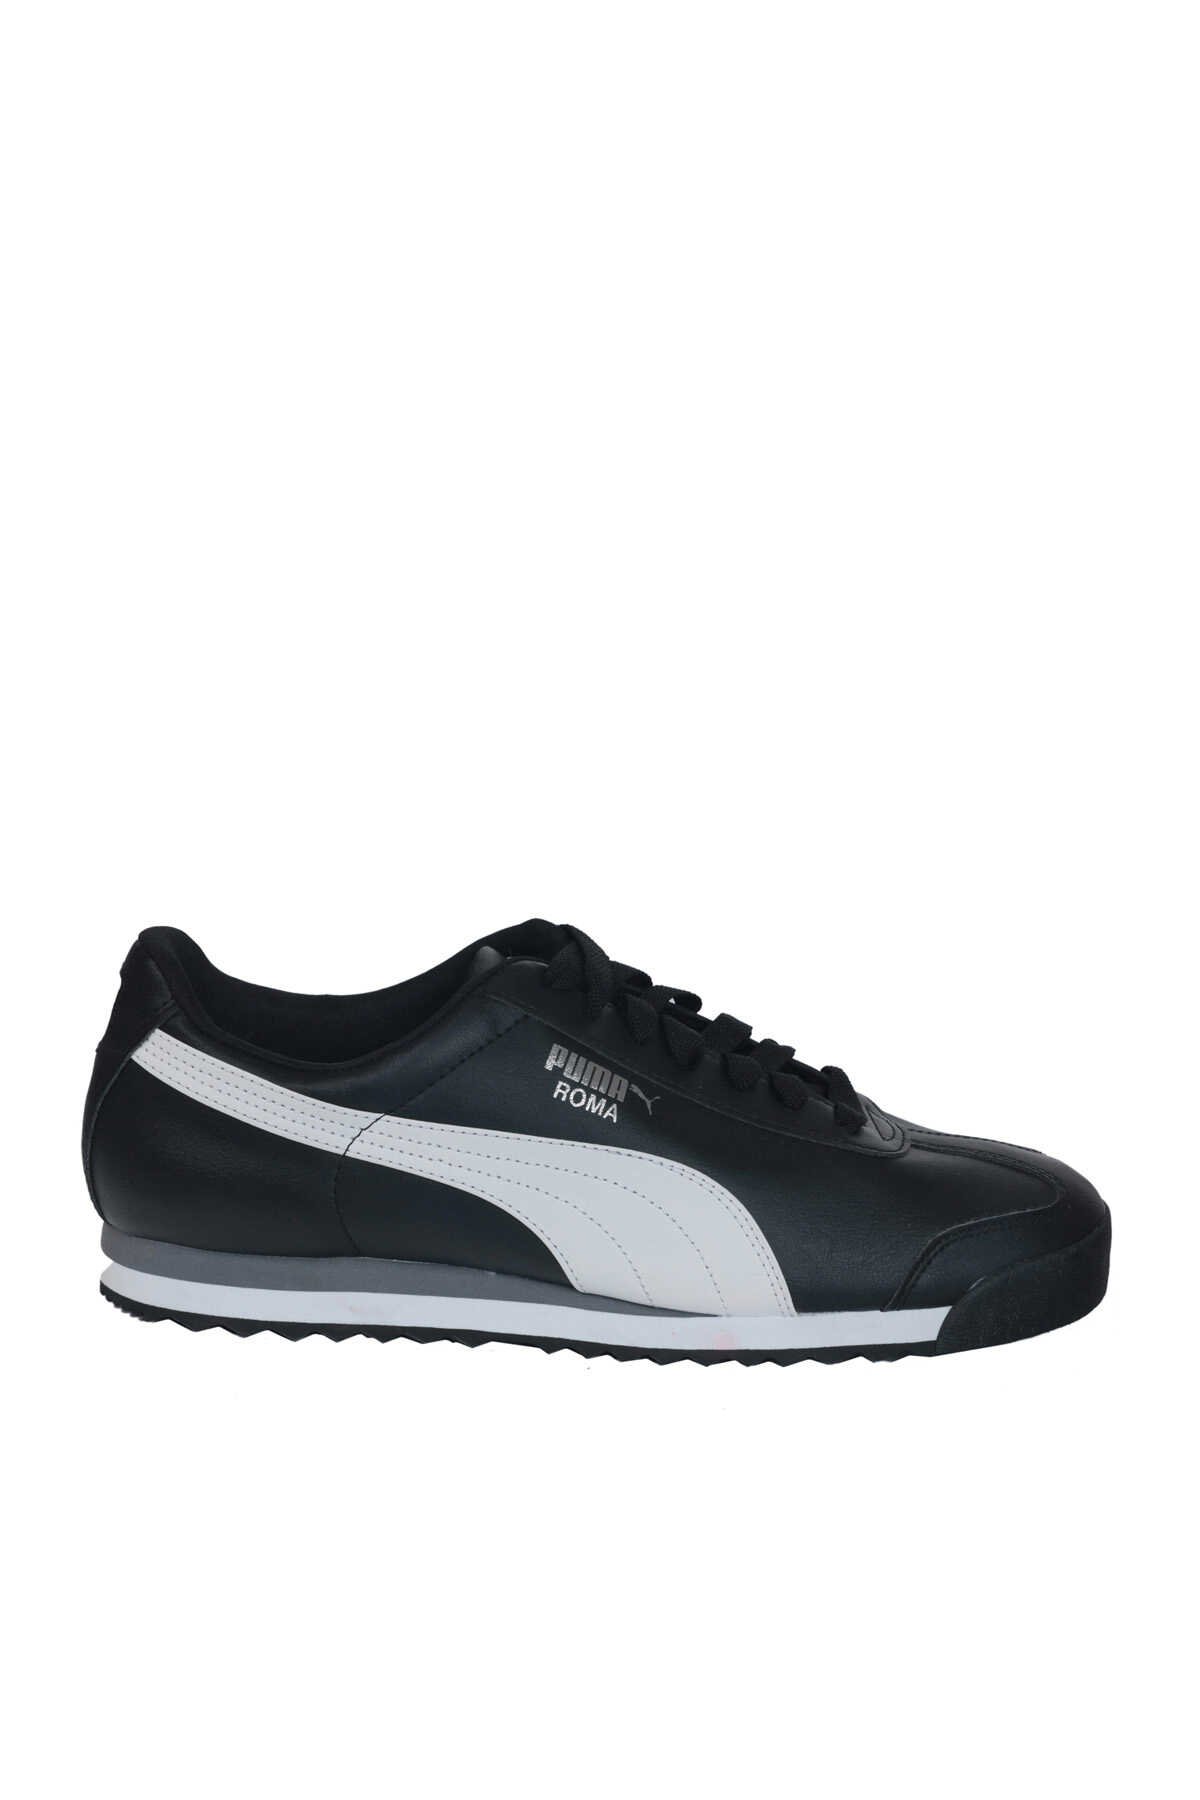 Puma - Puma Roma Basic Erkek Sneaker Ayakkabı Siyah / Beyaz / Gümüş